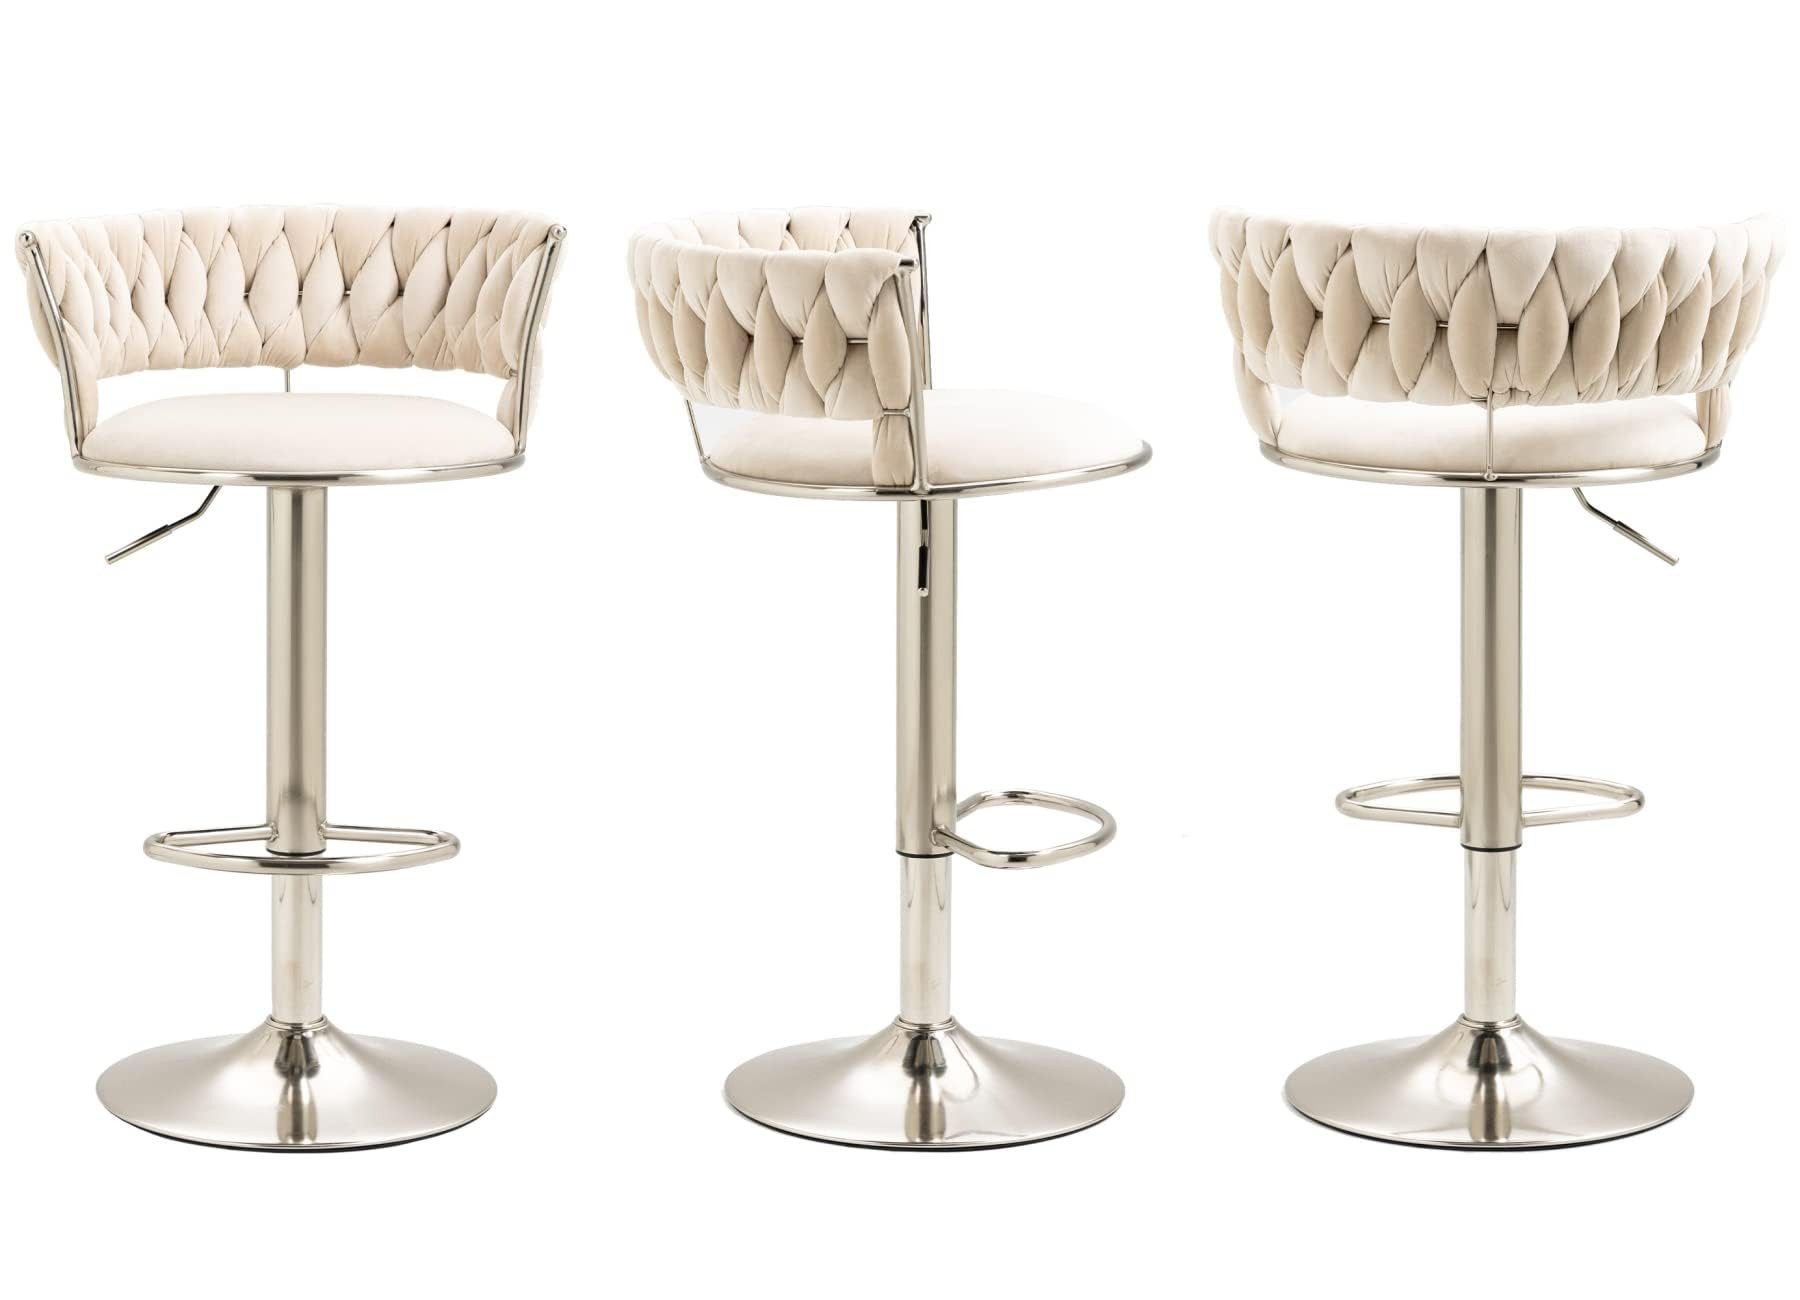 AUKWIK Barhocker Set, Moderne Samt-Barstühle mit runden Rückenlehne und Fußstütze (Set, 4 St., 2 er Set), 360° drehbar und höhenverstellbar, aus Metall in Chrom-Optik